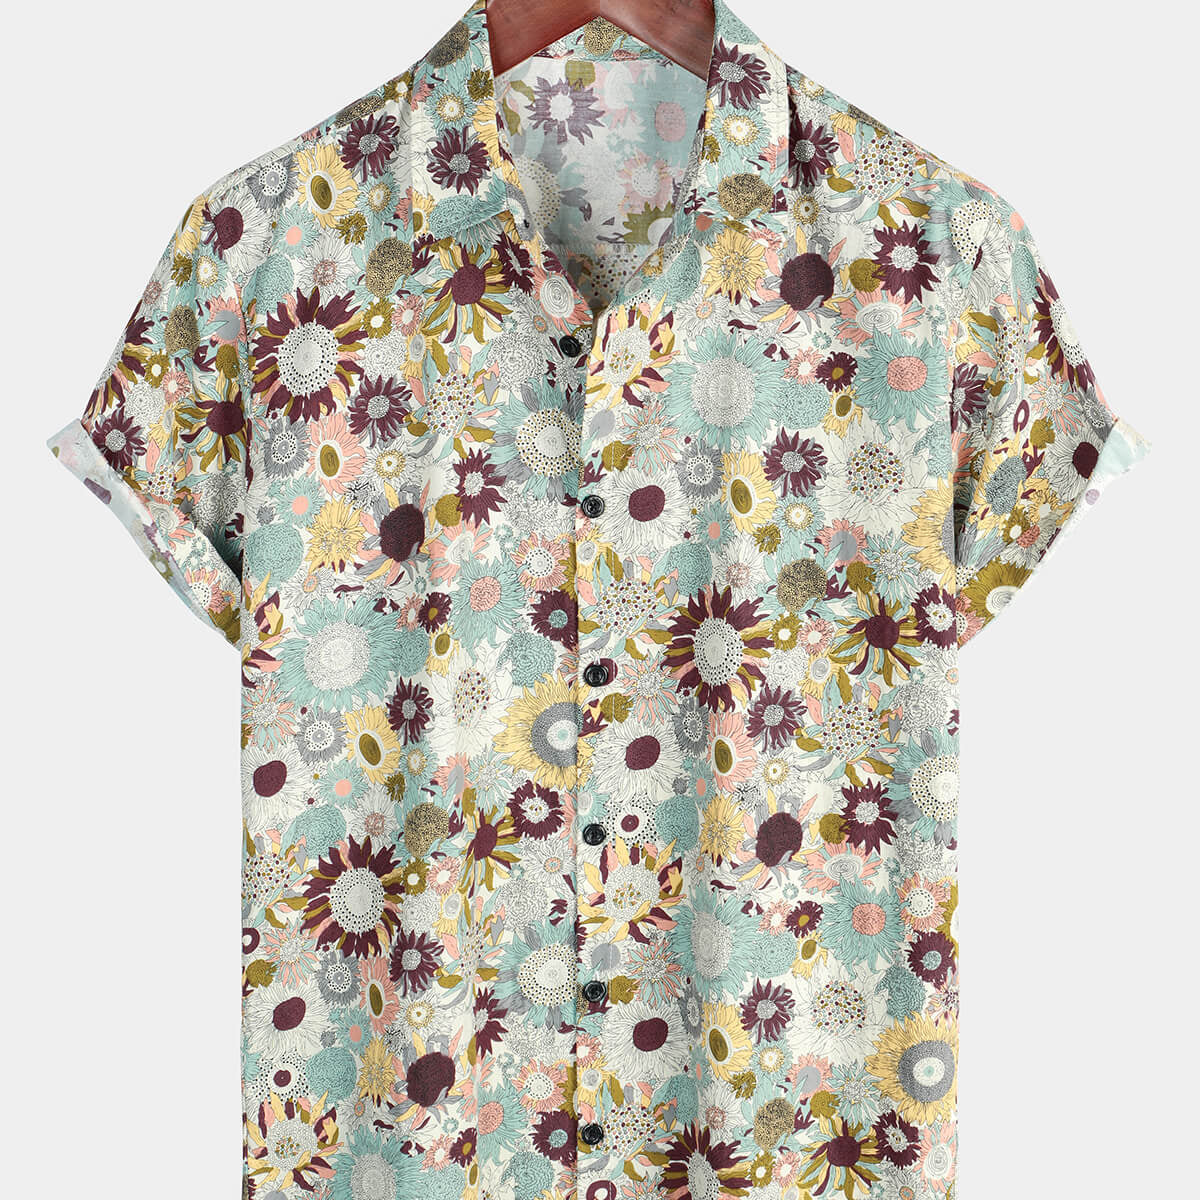 Camisa hawaiana de manga corta transpirable con botones de algodón de verano floral vintage para hombre